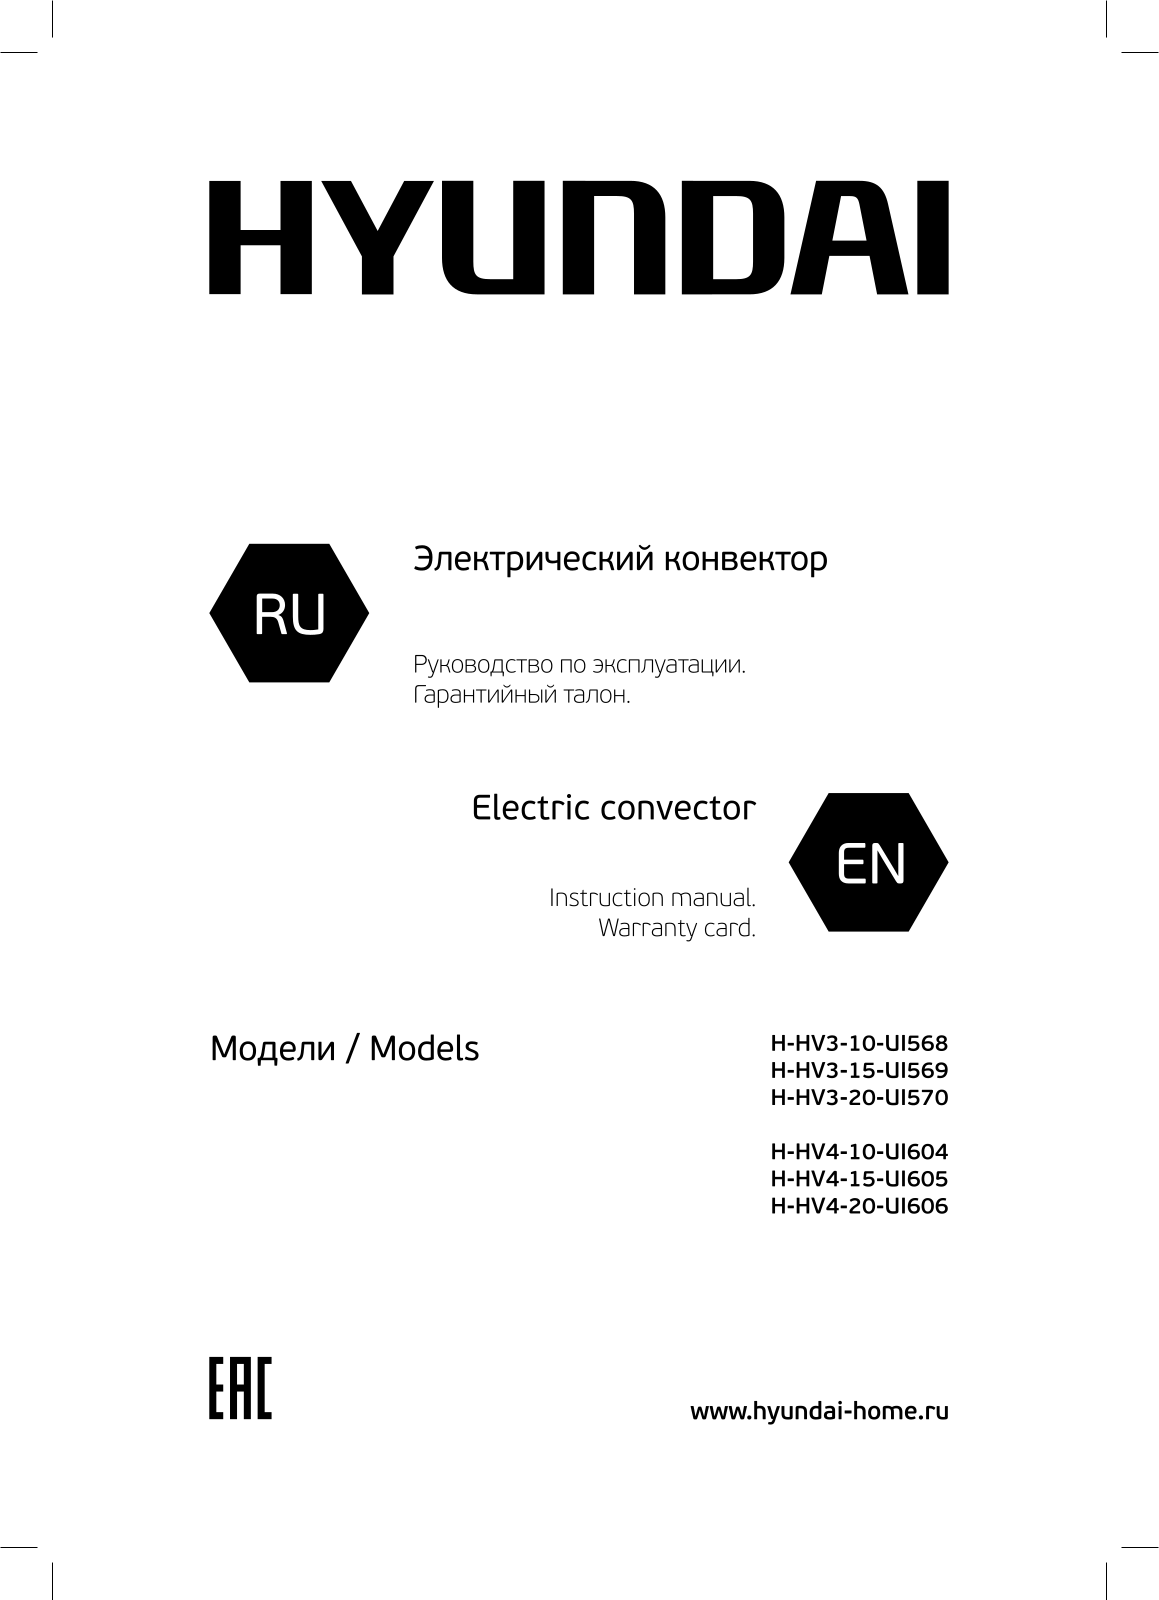 Hyundai H-HV4-10-UI604 User Manual